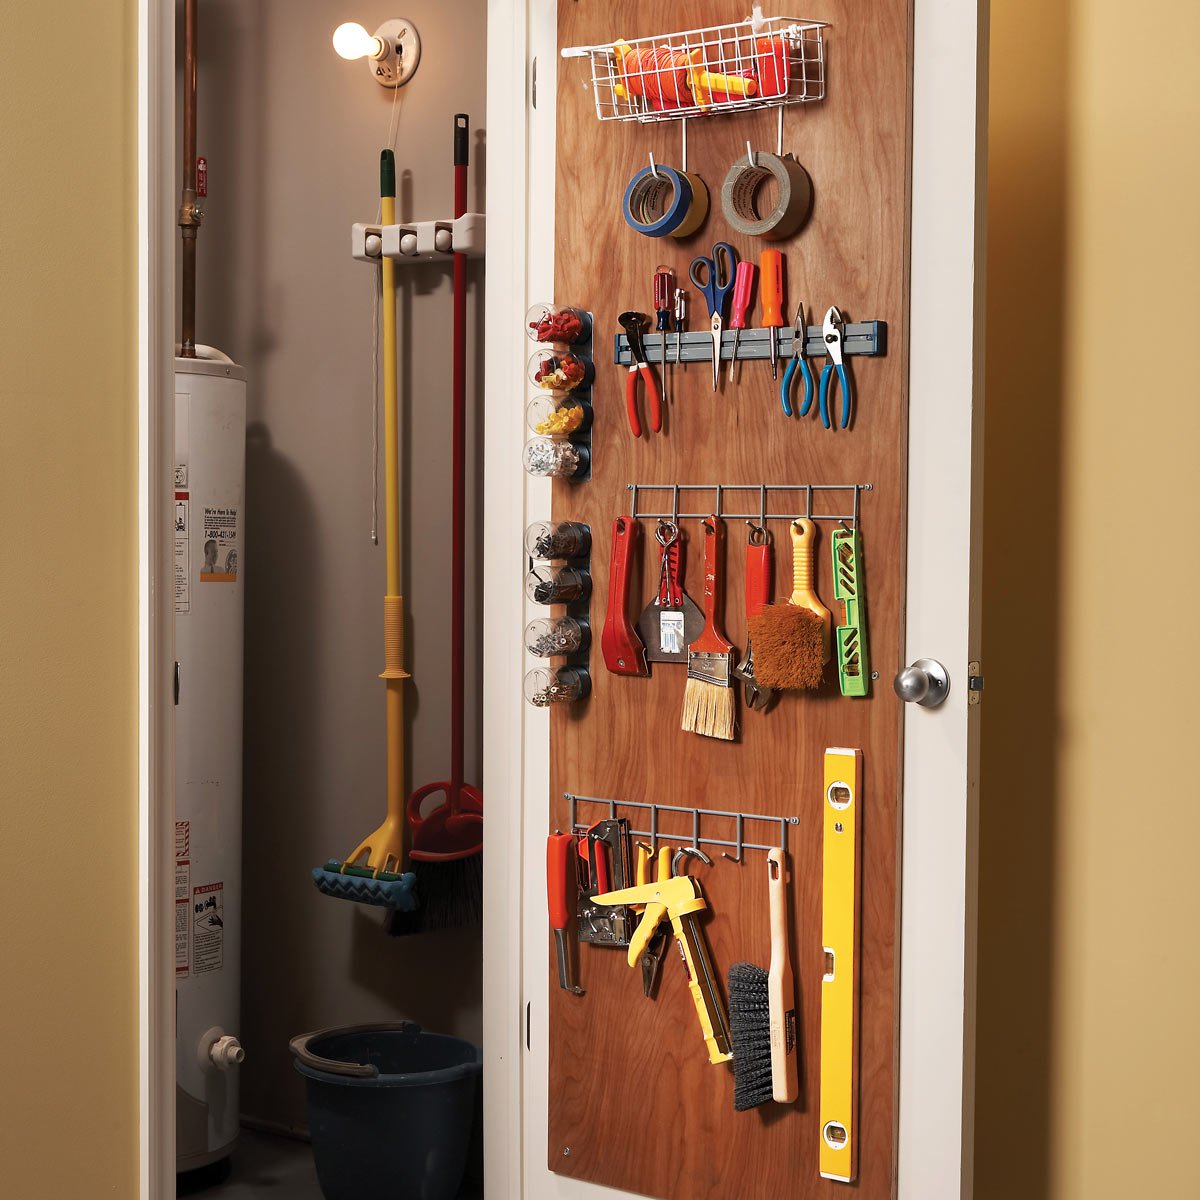 10 Utility Closet Organization Ideas, Closet Shelving Design Tool